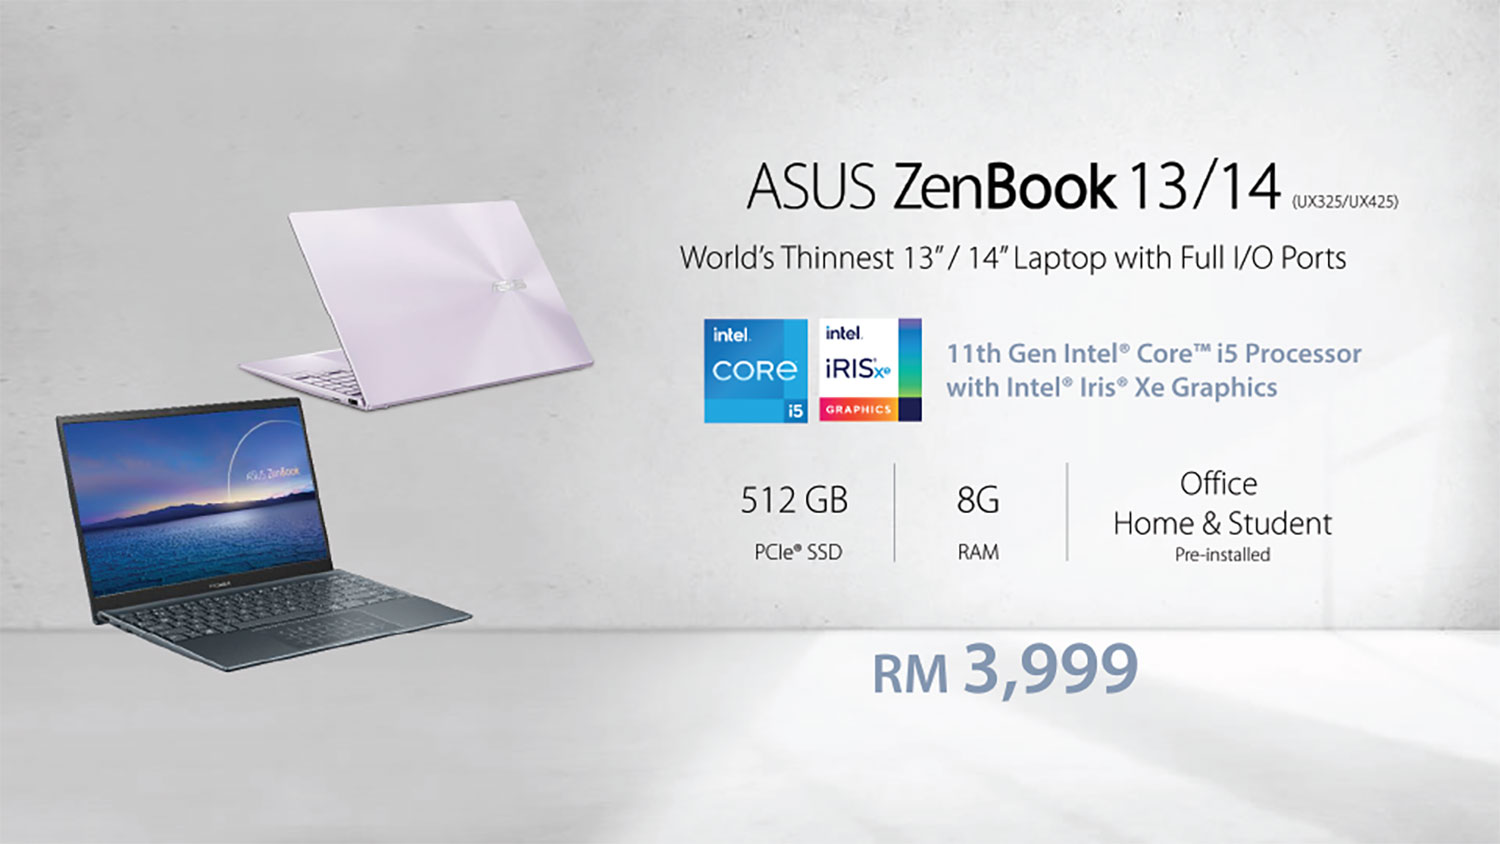 ASUS 11th Gen Intel Core Processor_ZenBook 13 (UX325) and ZenBook 14 (UX425) Price_2